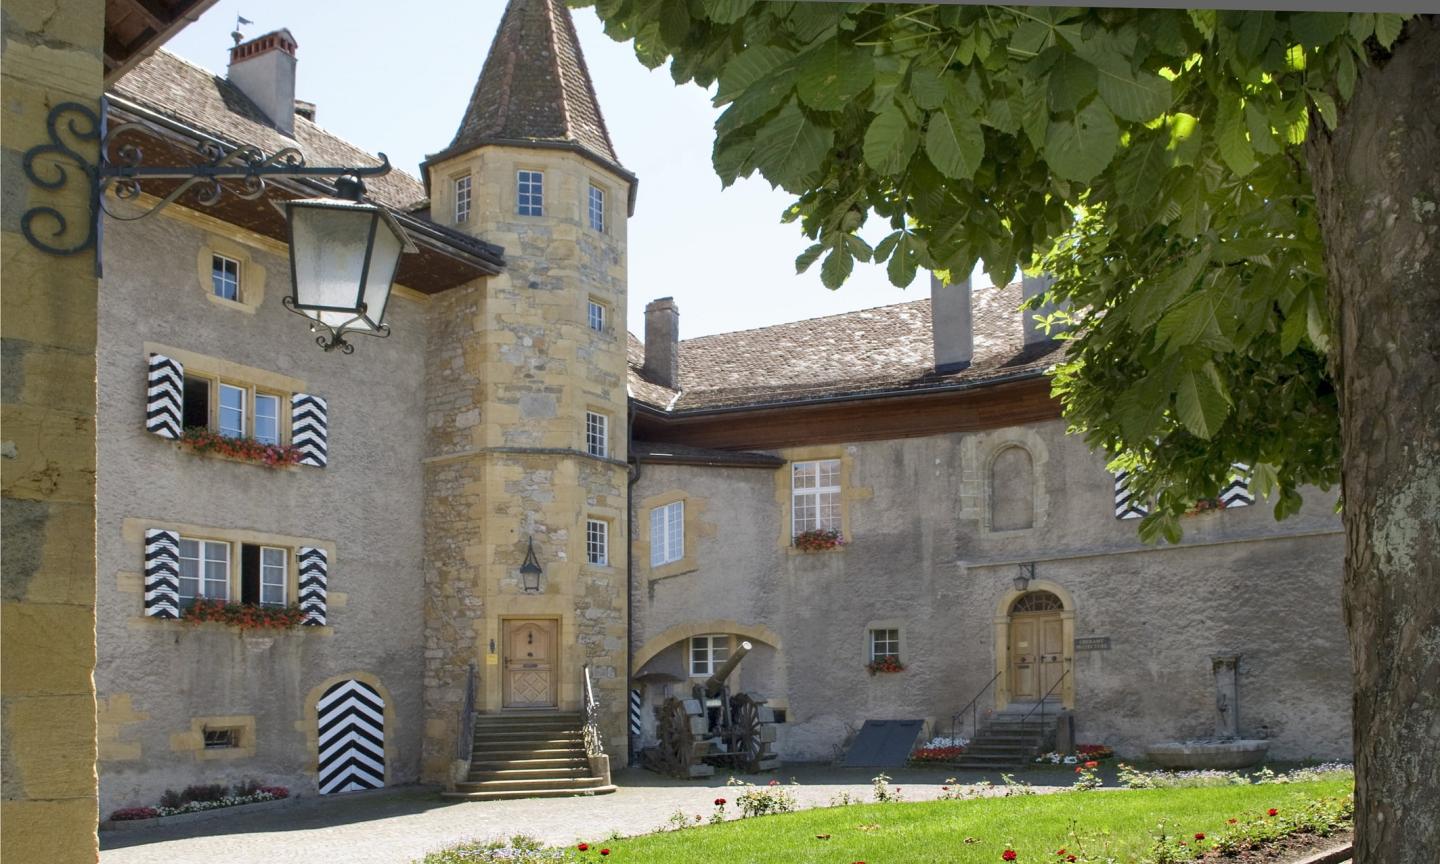 Agrandir l'image Cour du château de Morat